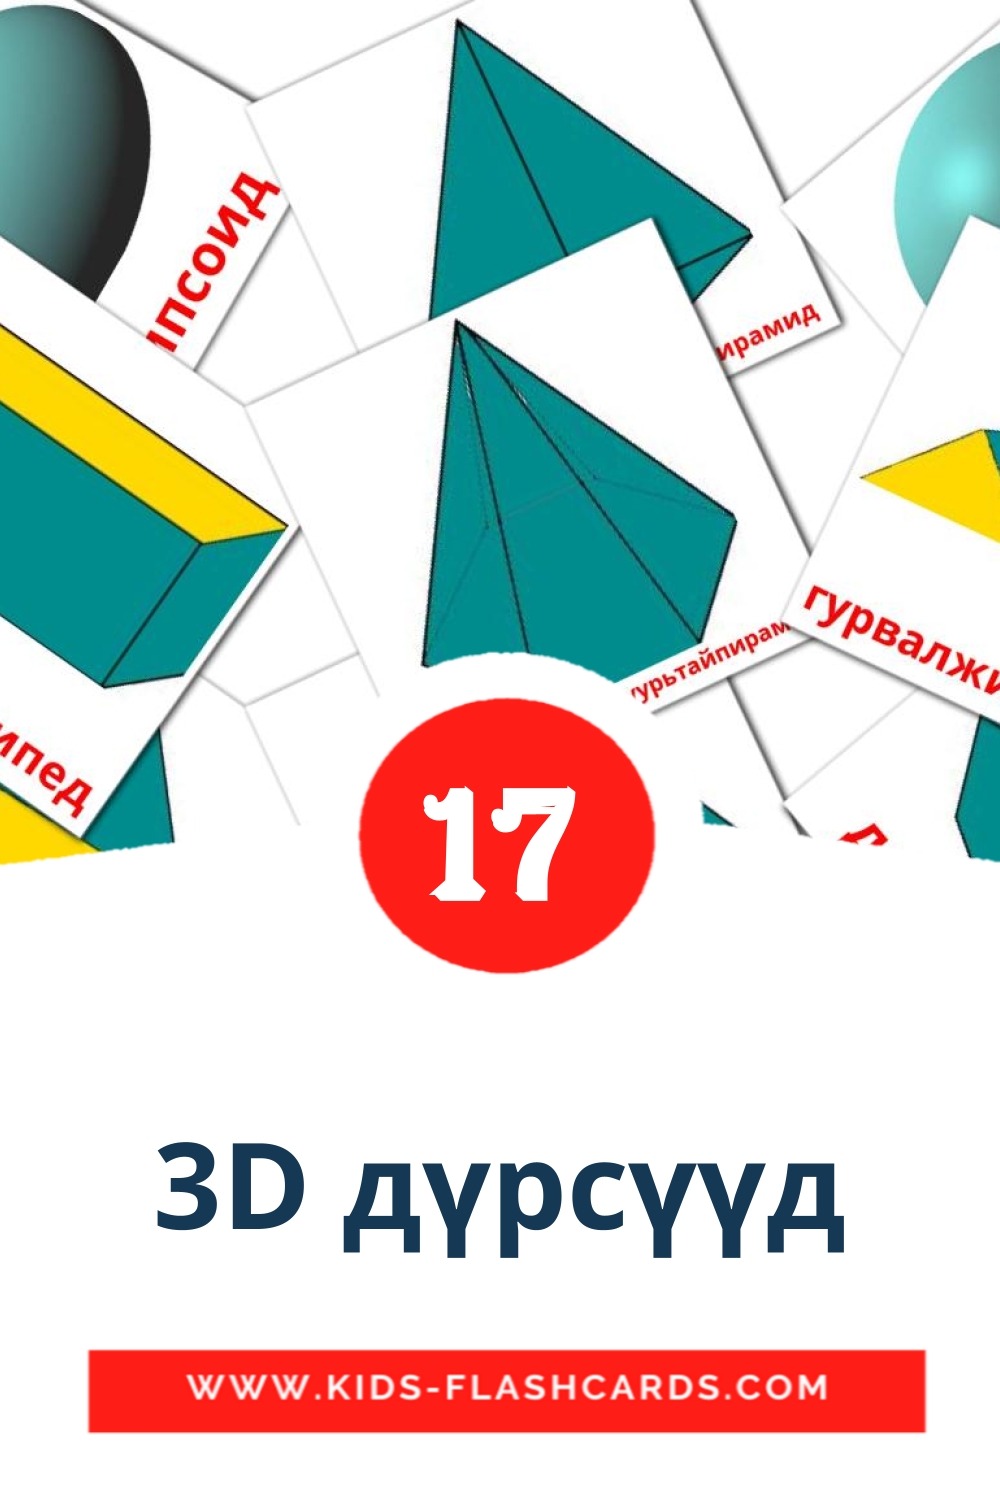 17 3D дүрсүүд Bildkarten für den Kindergarten auf Mongolei